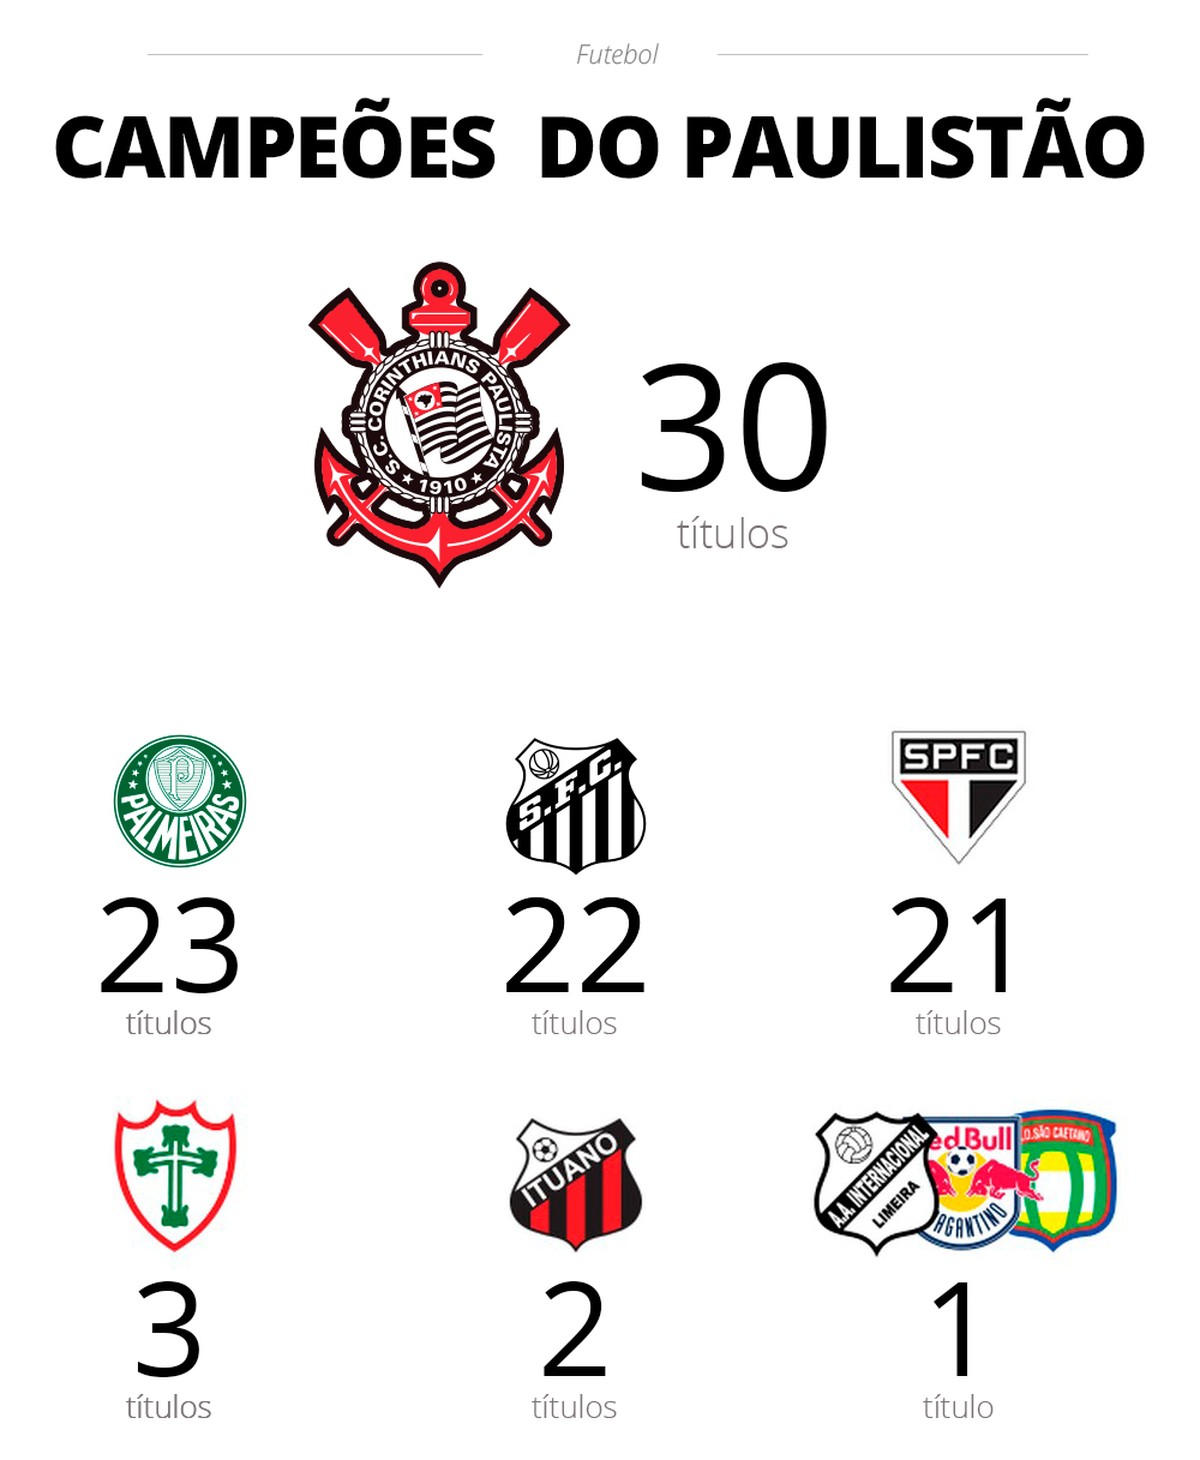 Capitão do título da Copa Paulista, Vitor Braga não permanecerá no XV para  o próximo ano